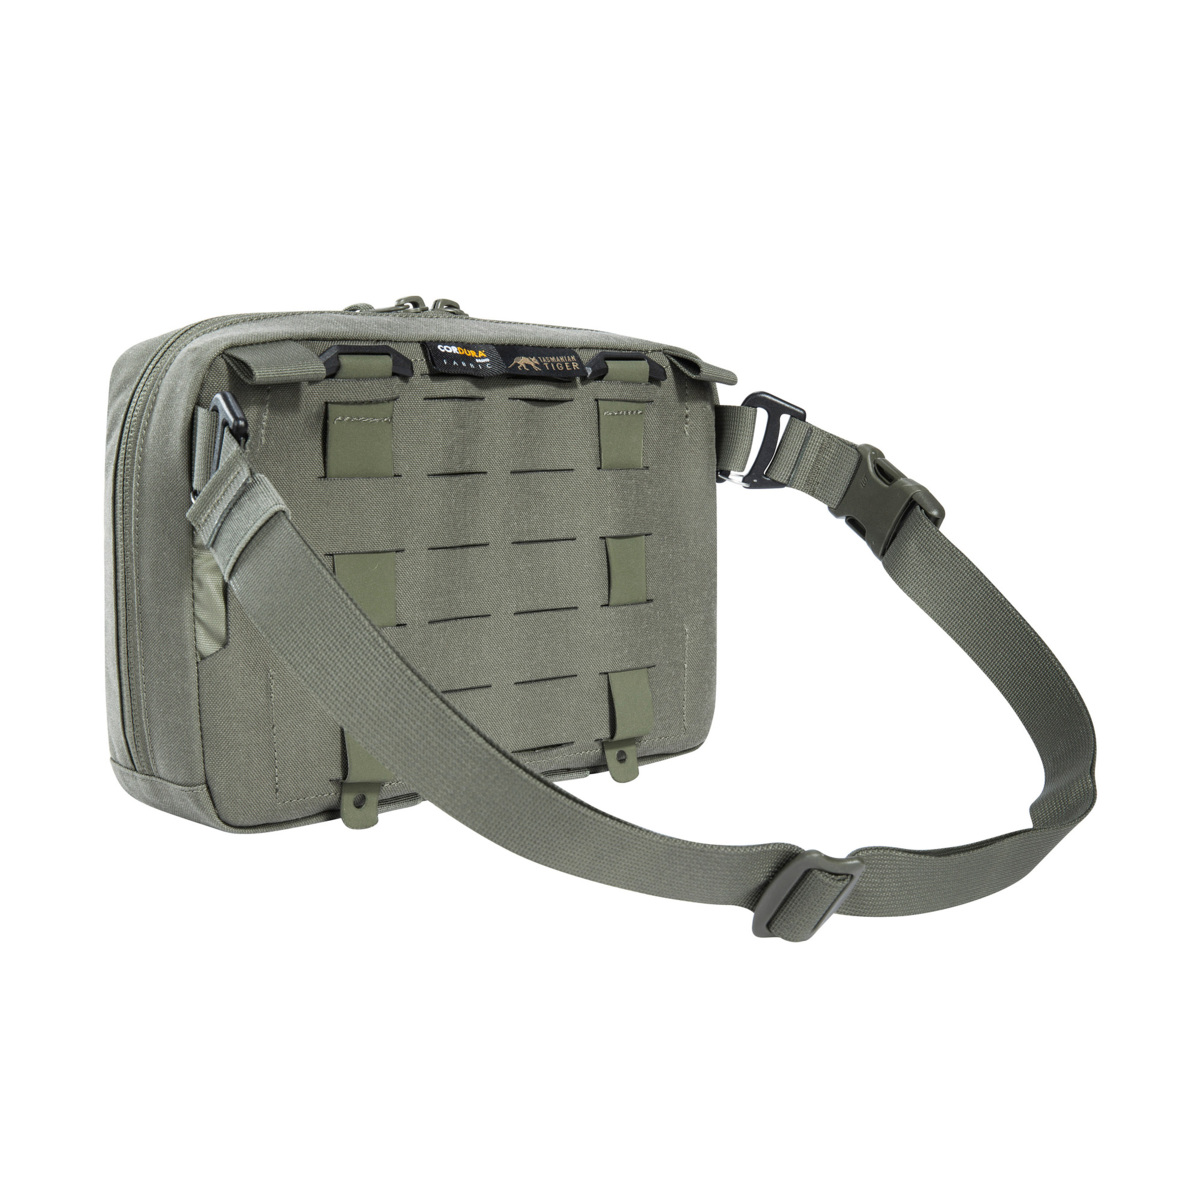 TT Tac Pouch 8.1 Hip IRR - Tactical Equipment Bag